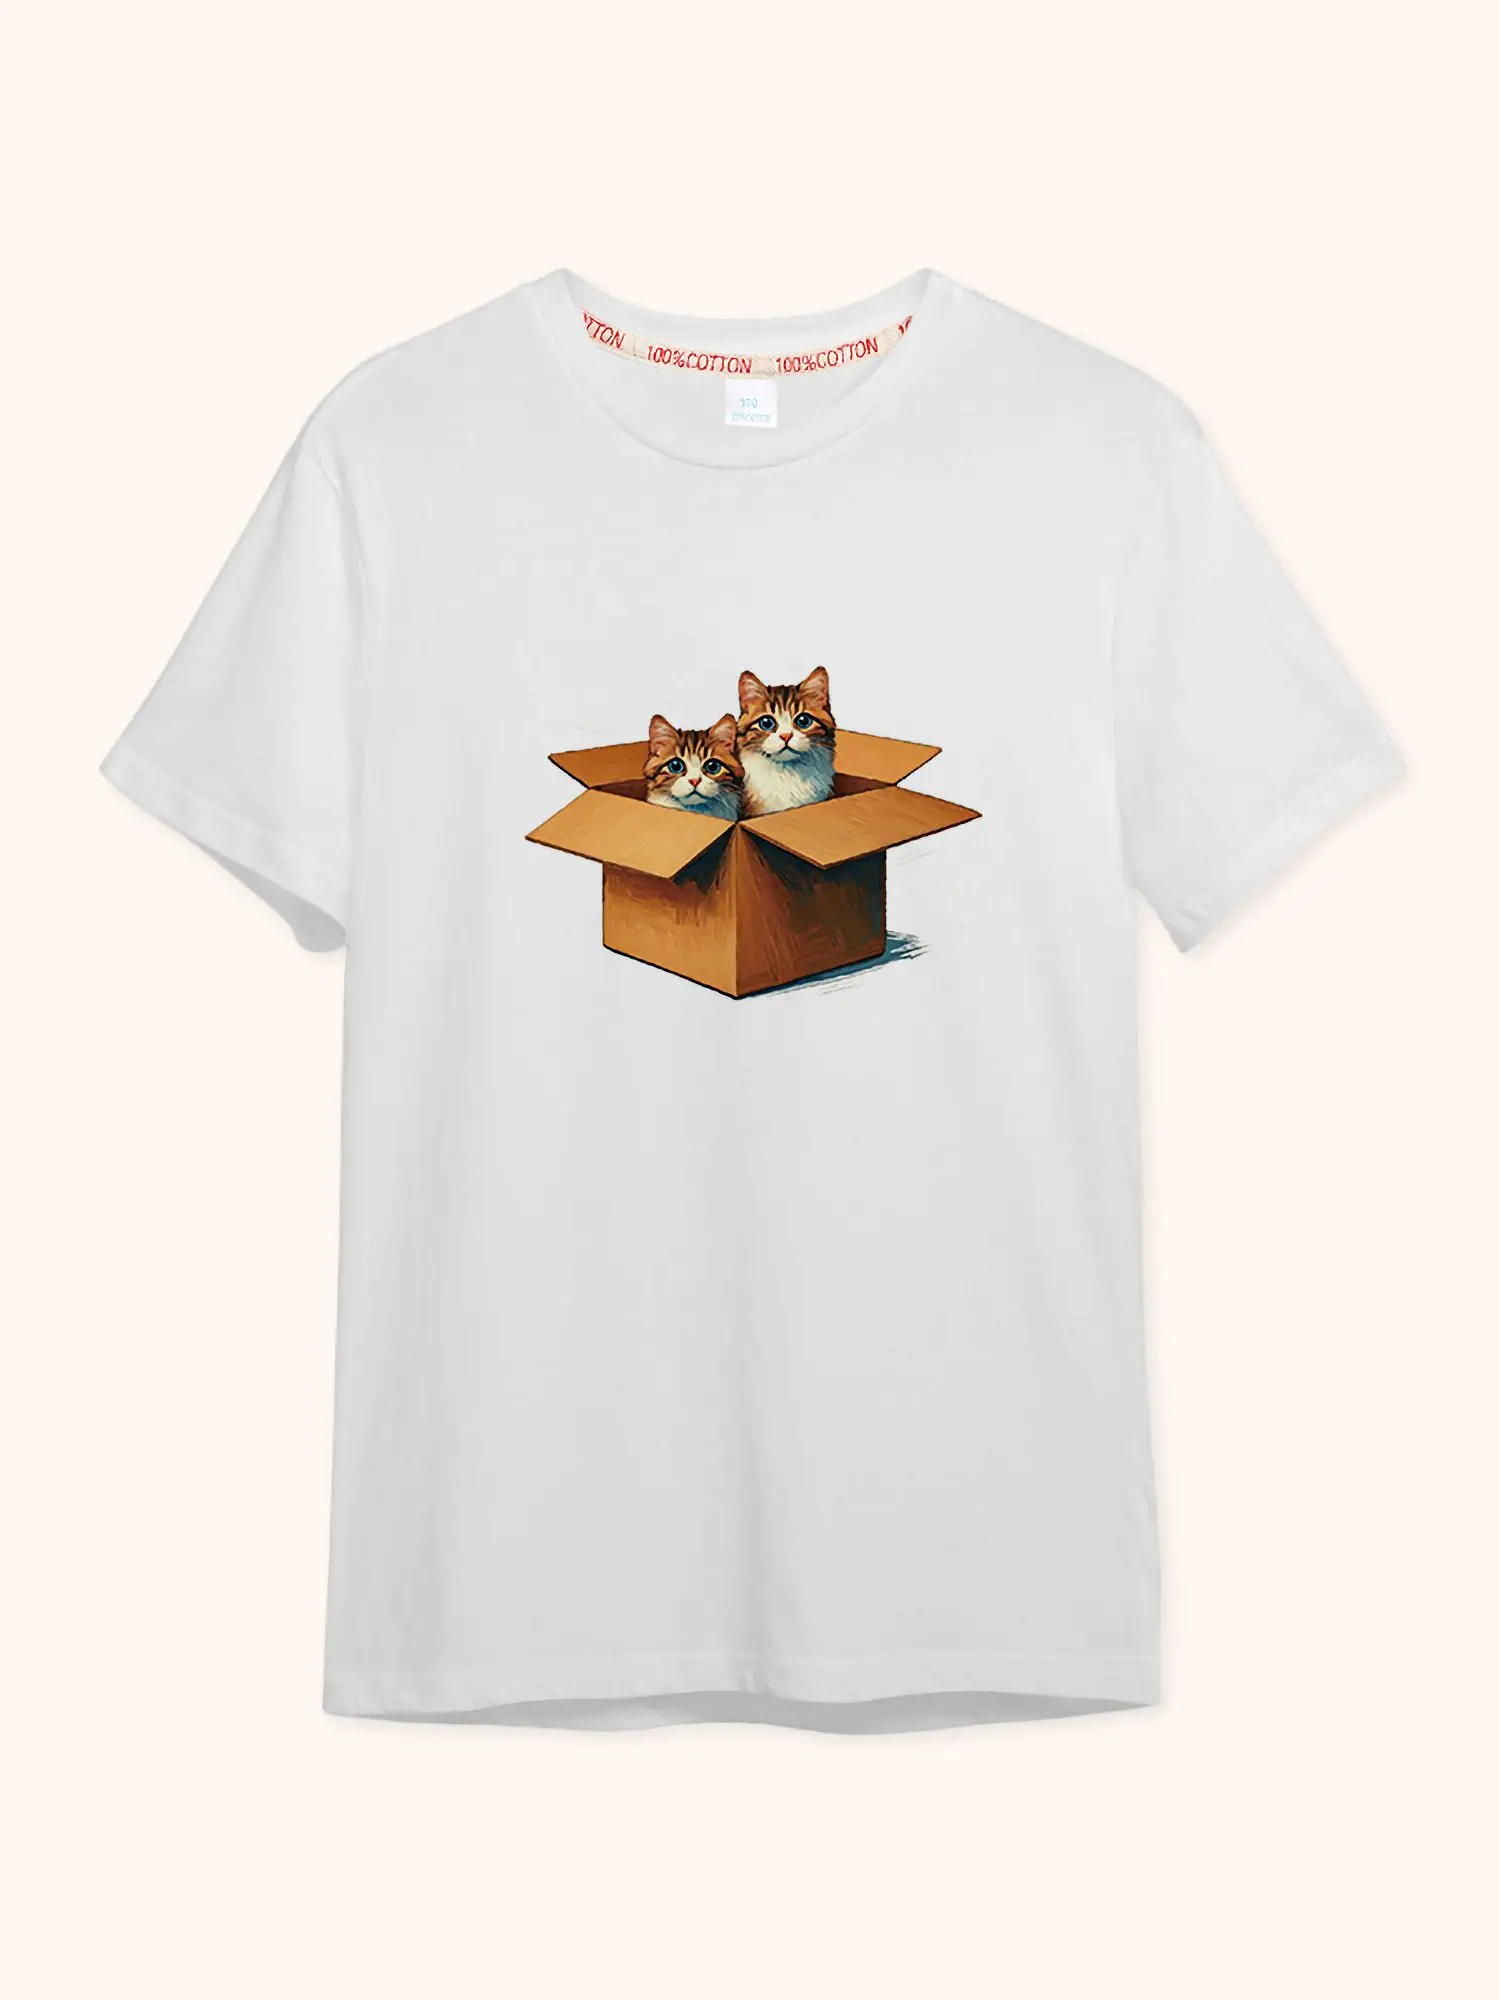 

Милая кошка мечты девочки короткая футболка